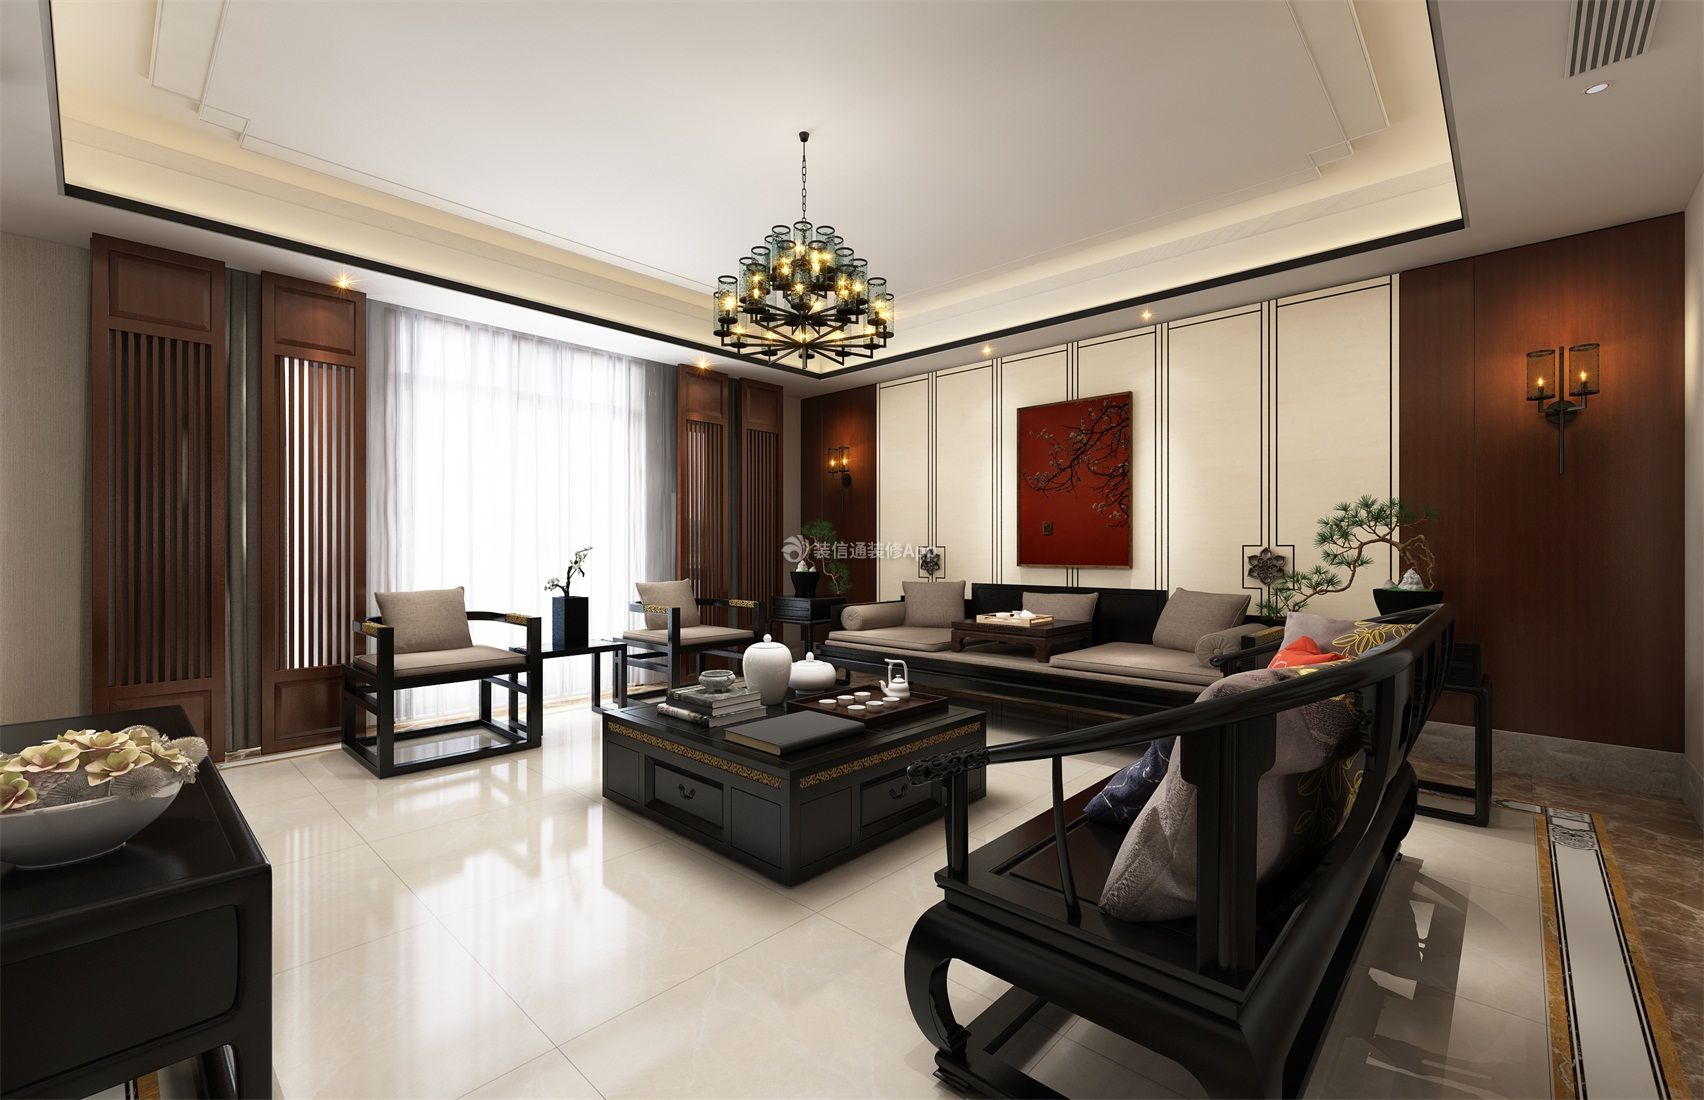 新中式风格别墅客厅 中式沙发图片 